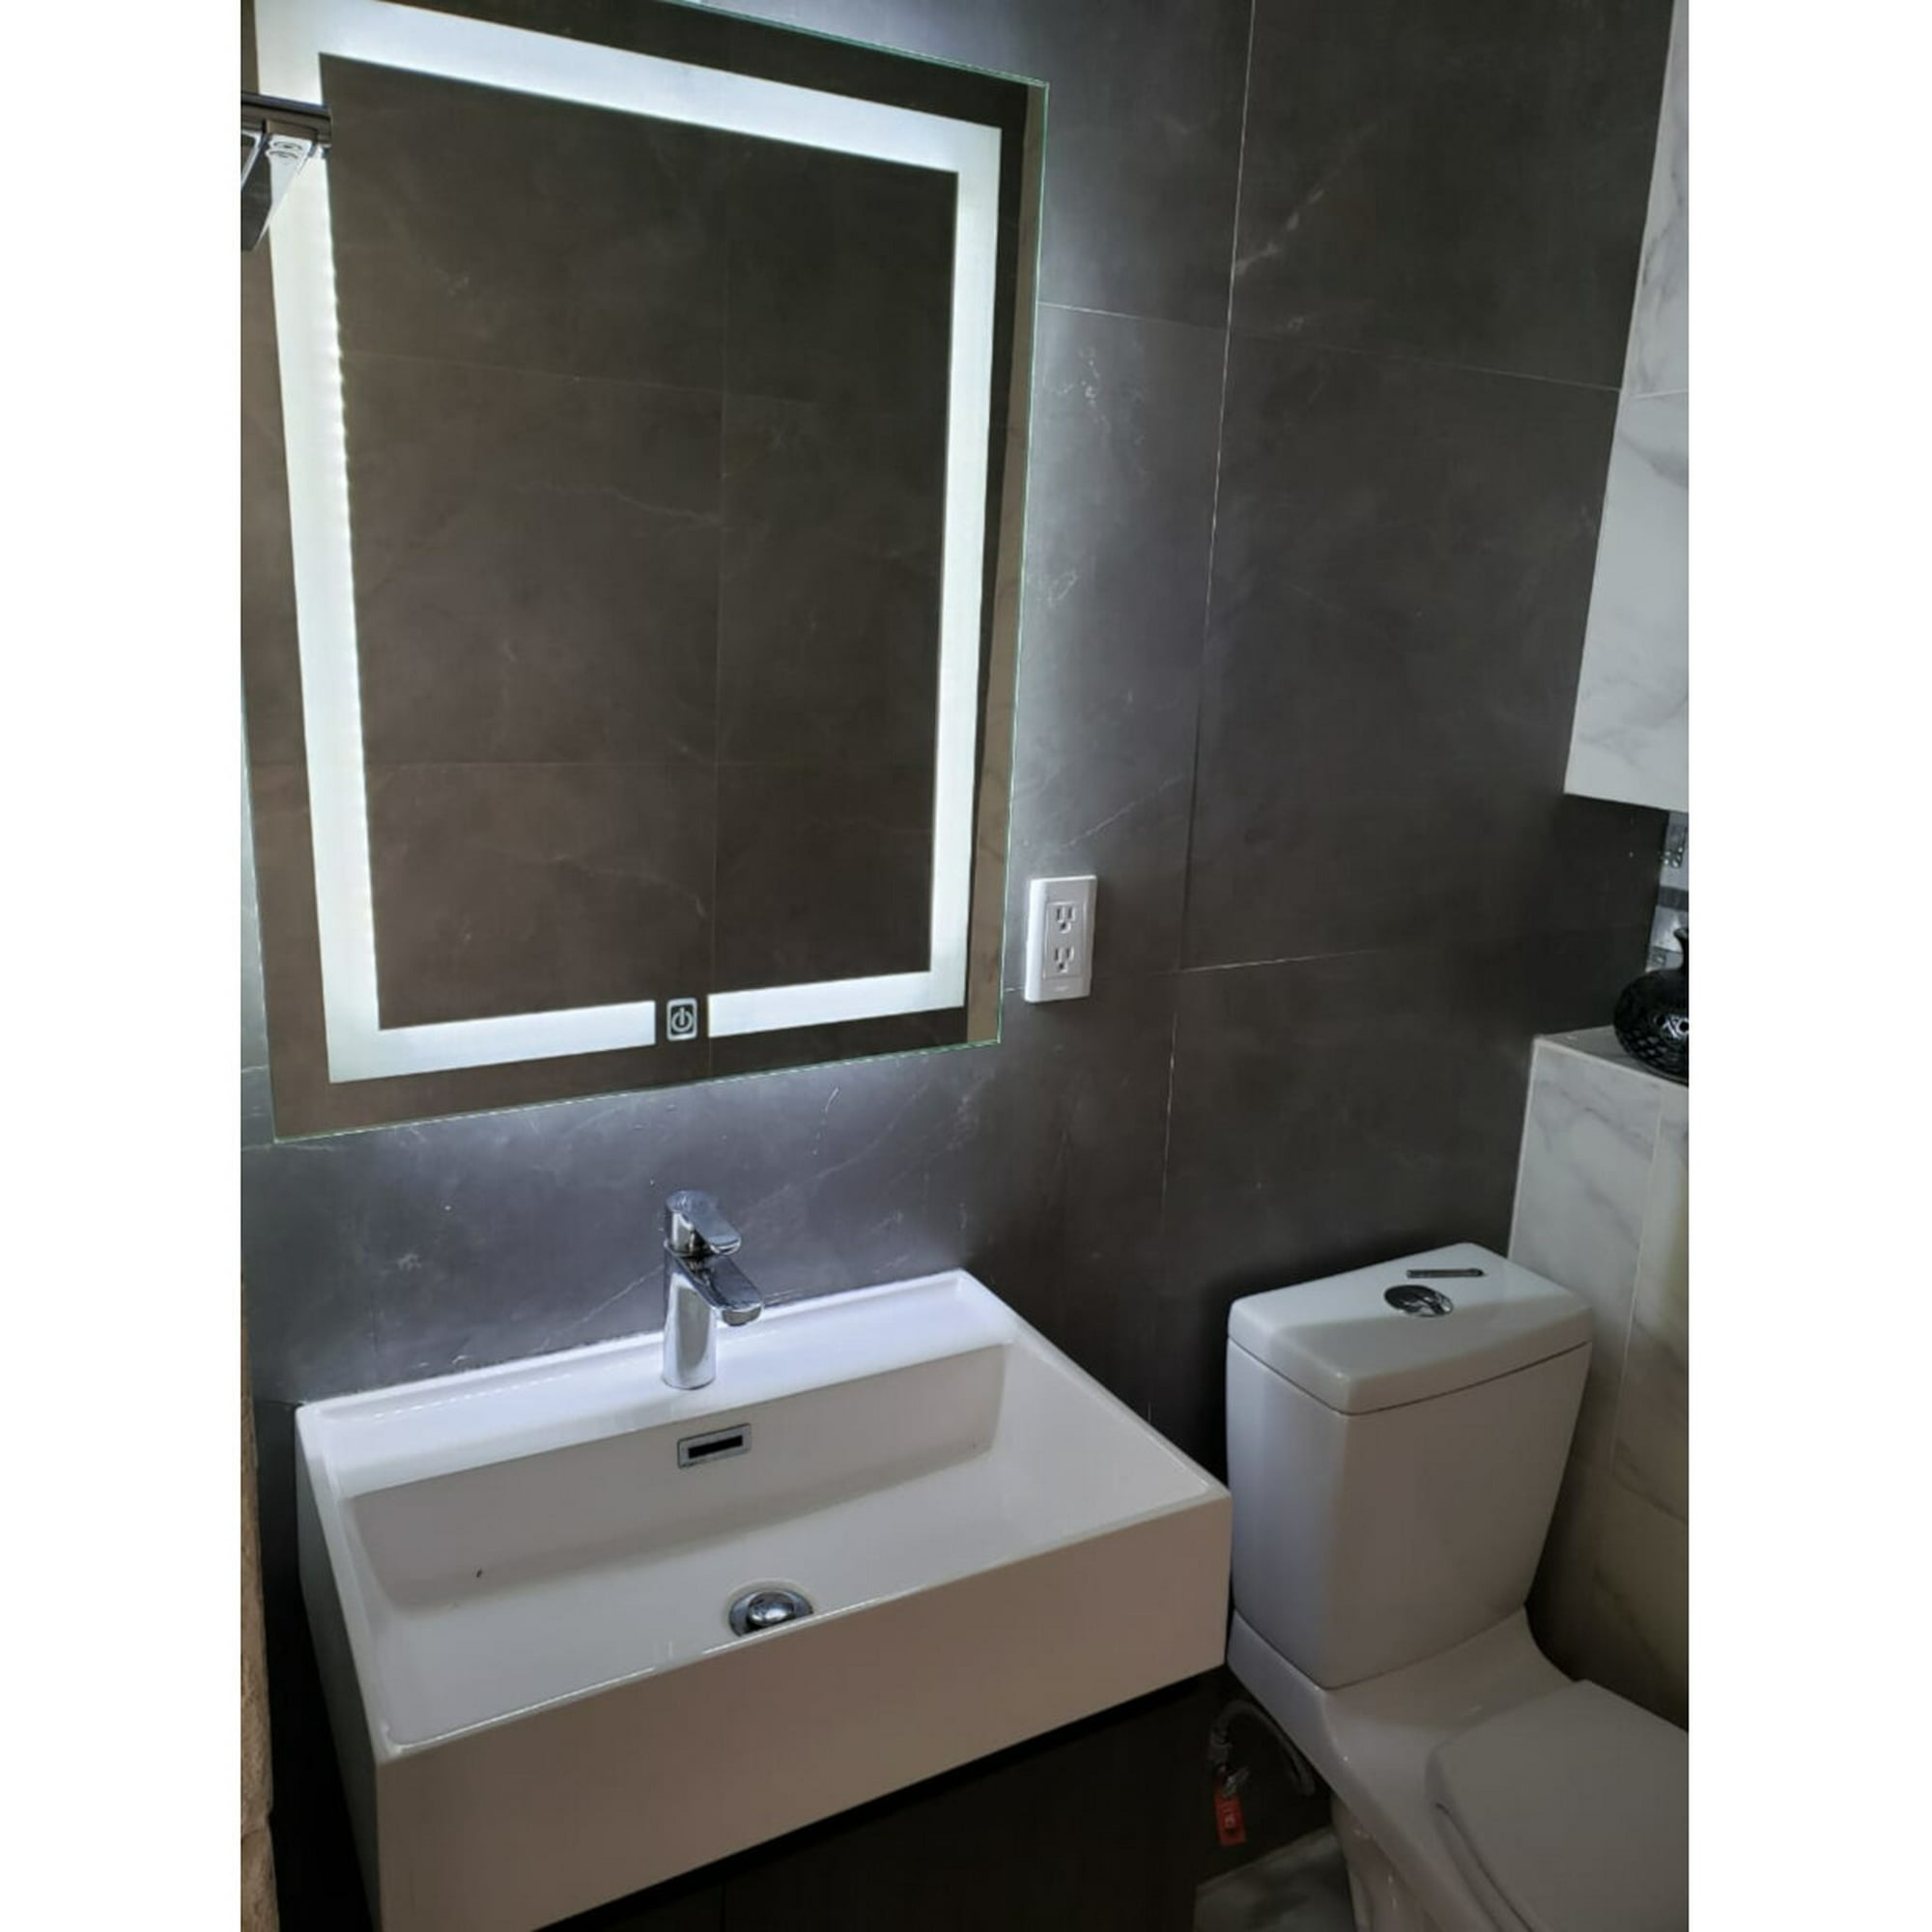 Espejo para baño Touch Led medidas 78 x 60 cm con iluminación frontal y  trasera. ARD ARD Contemporaneo